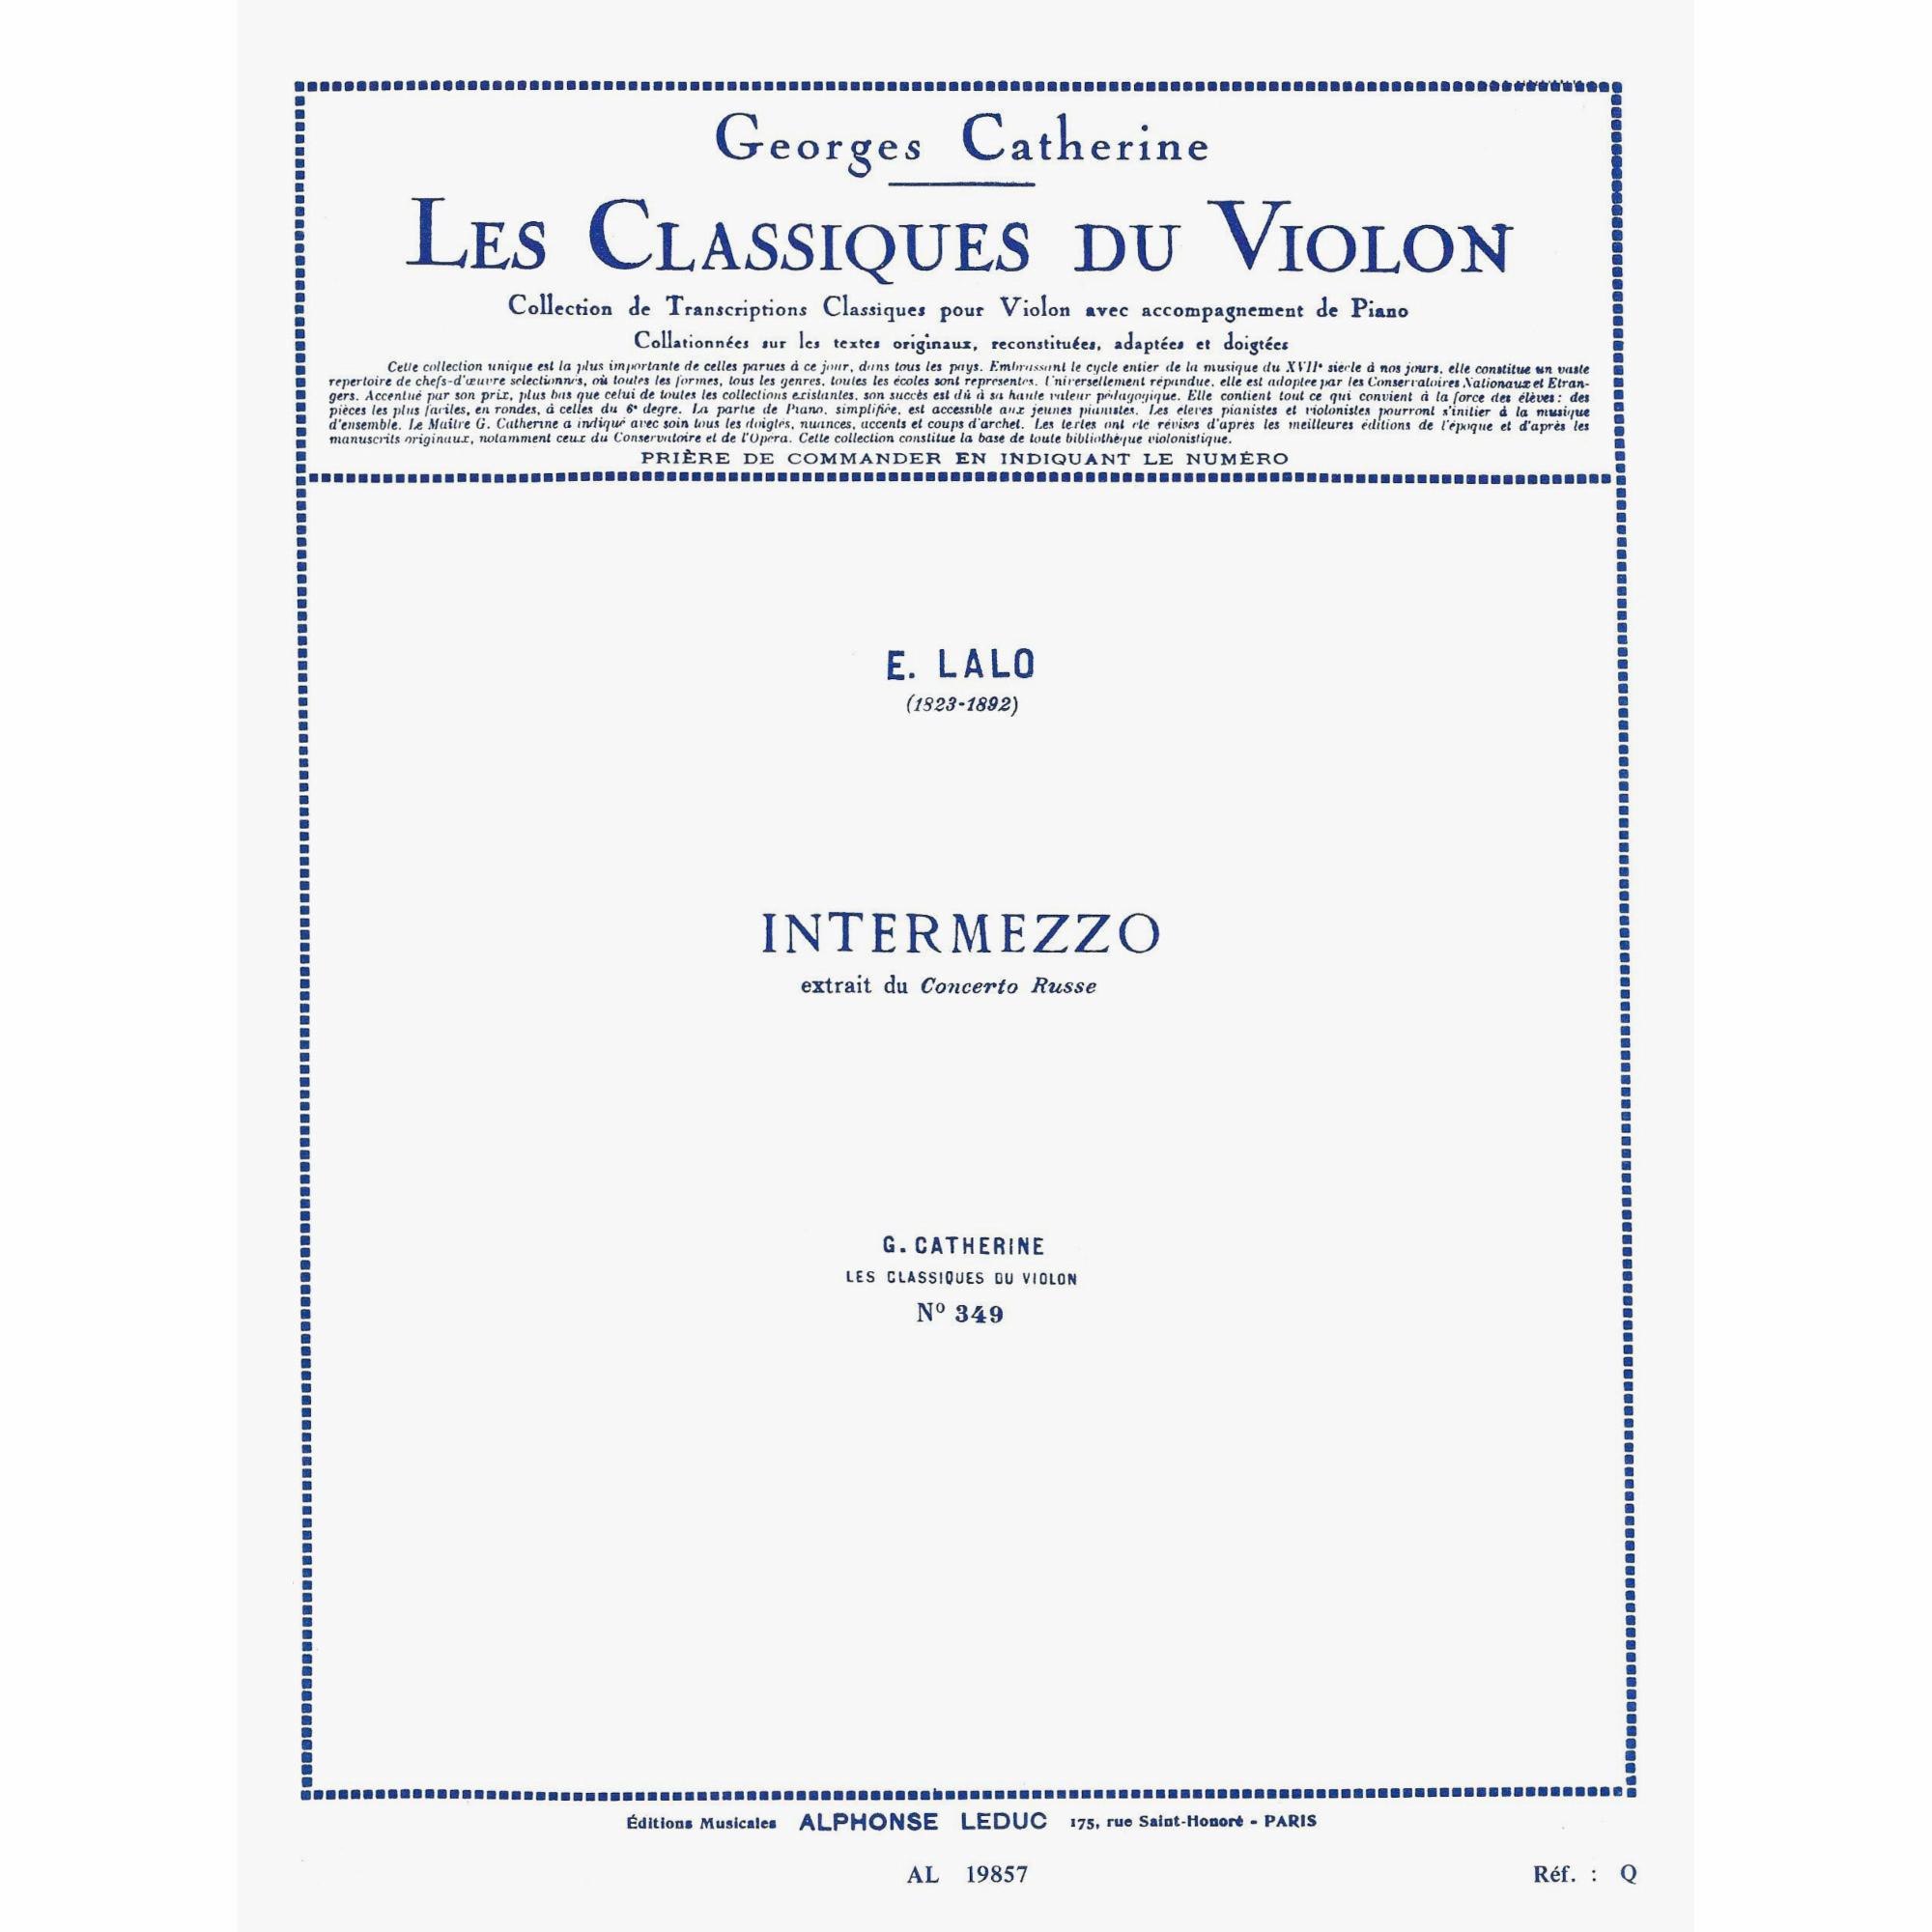 Lalo -- Intermezzo, from Concerto russe for Violin and Piano